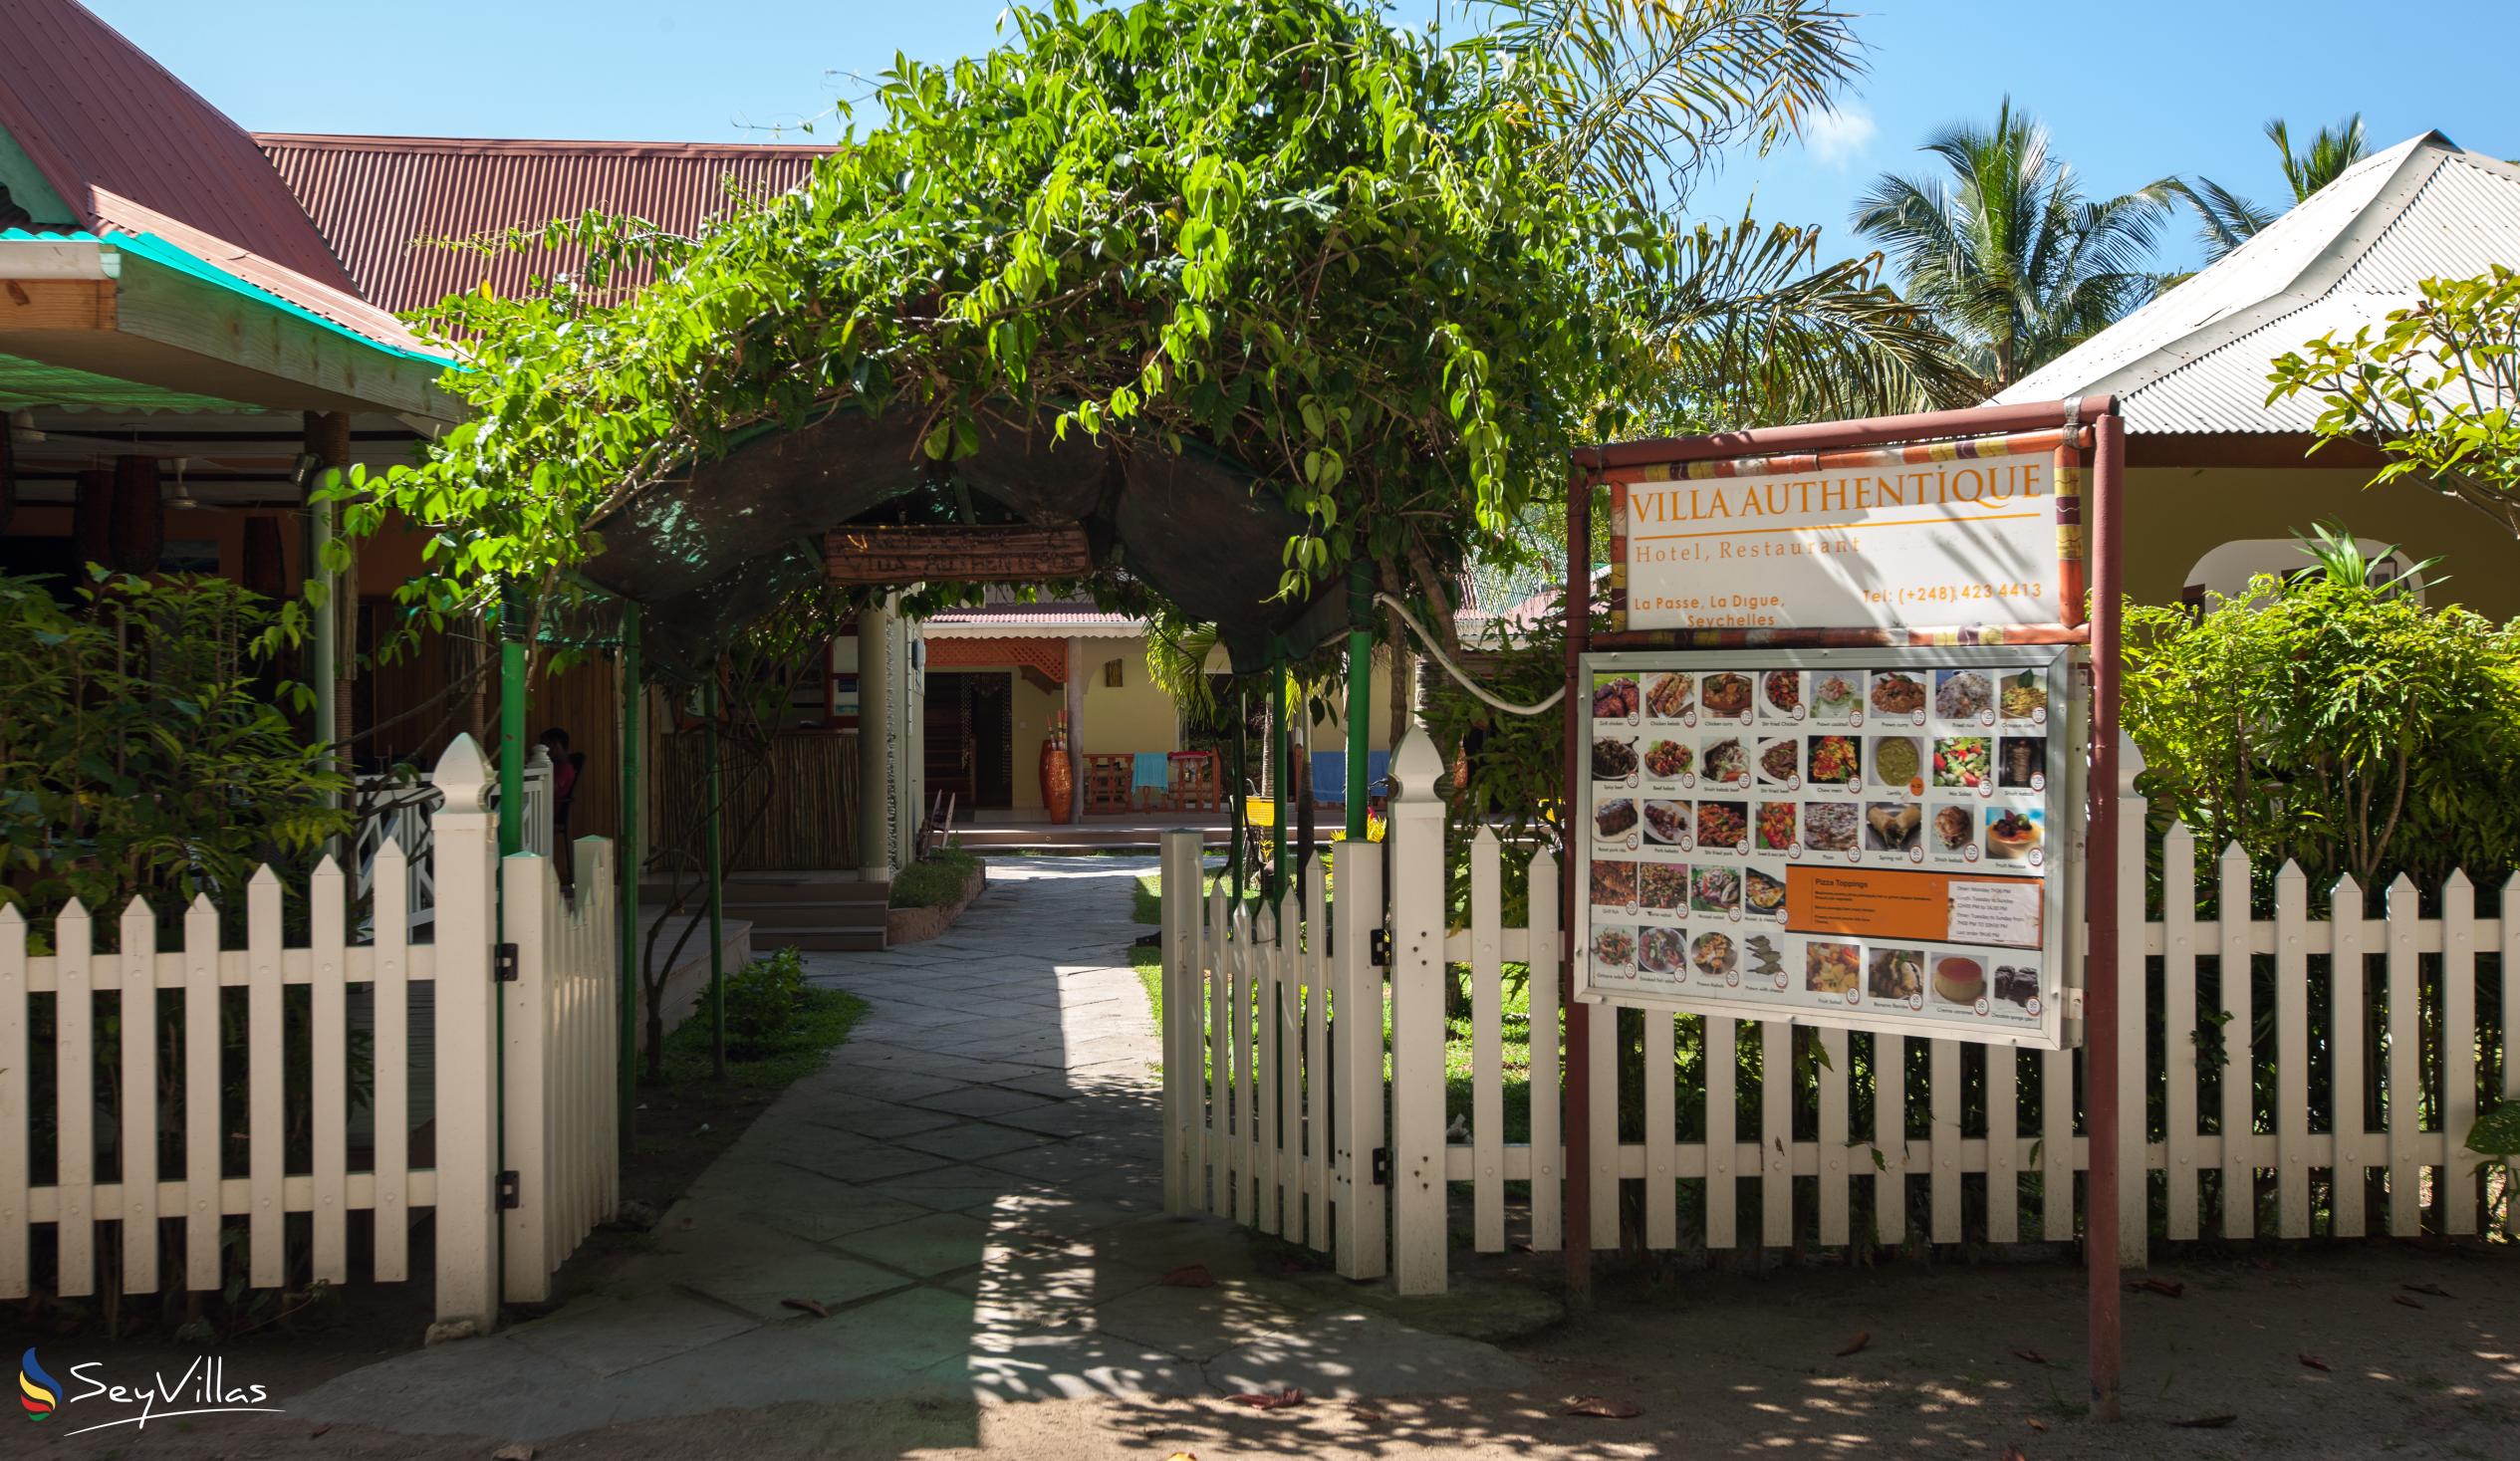 Foto 4: Villa Authentique - Extérieur - La Digue (Seychelles)